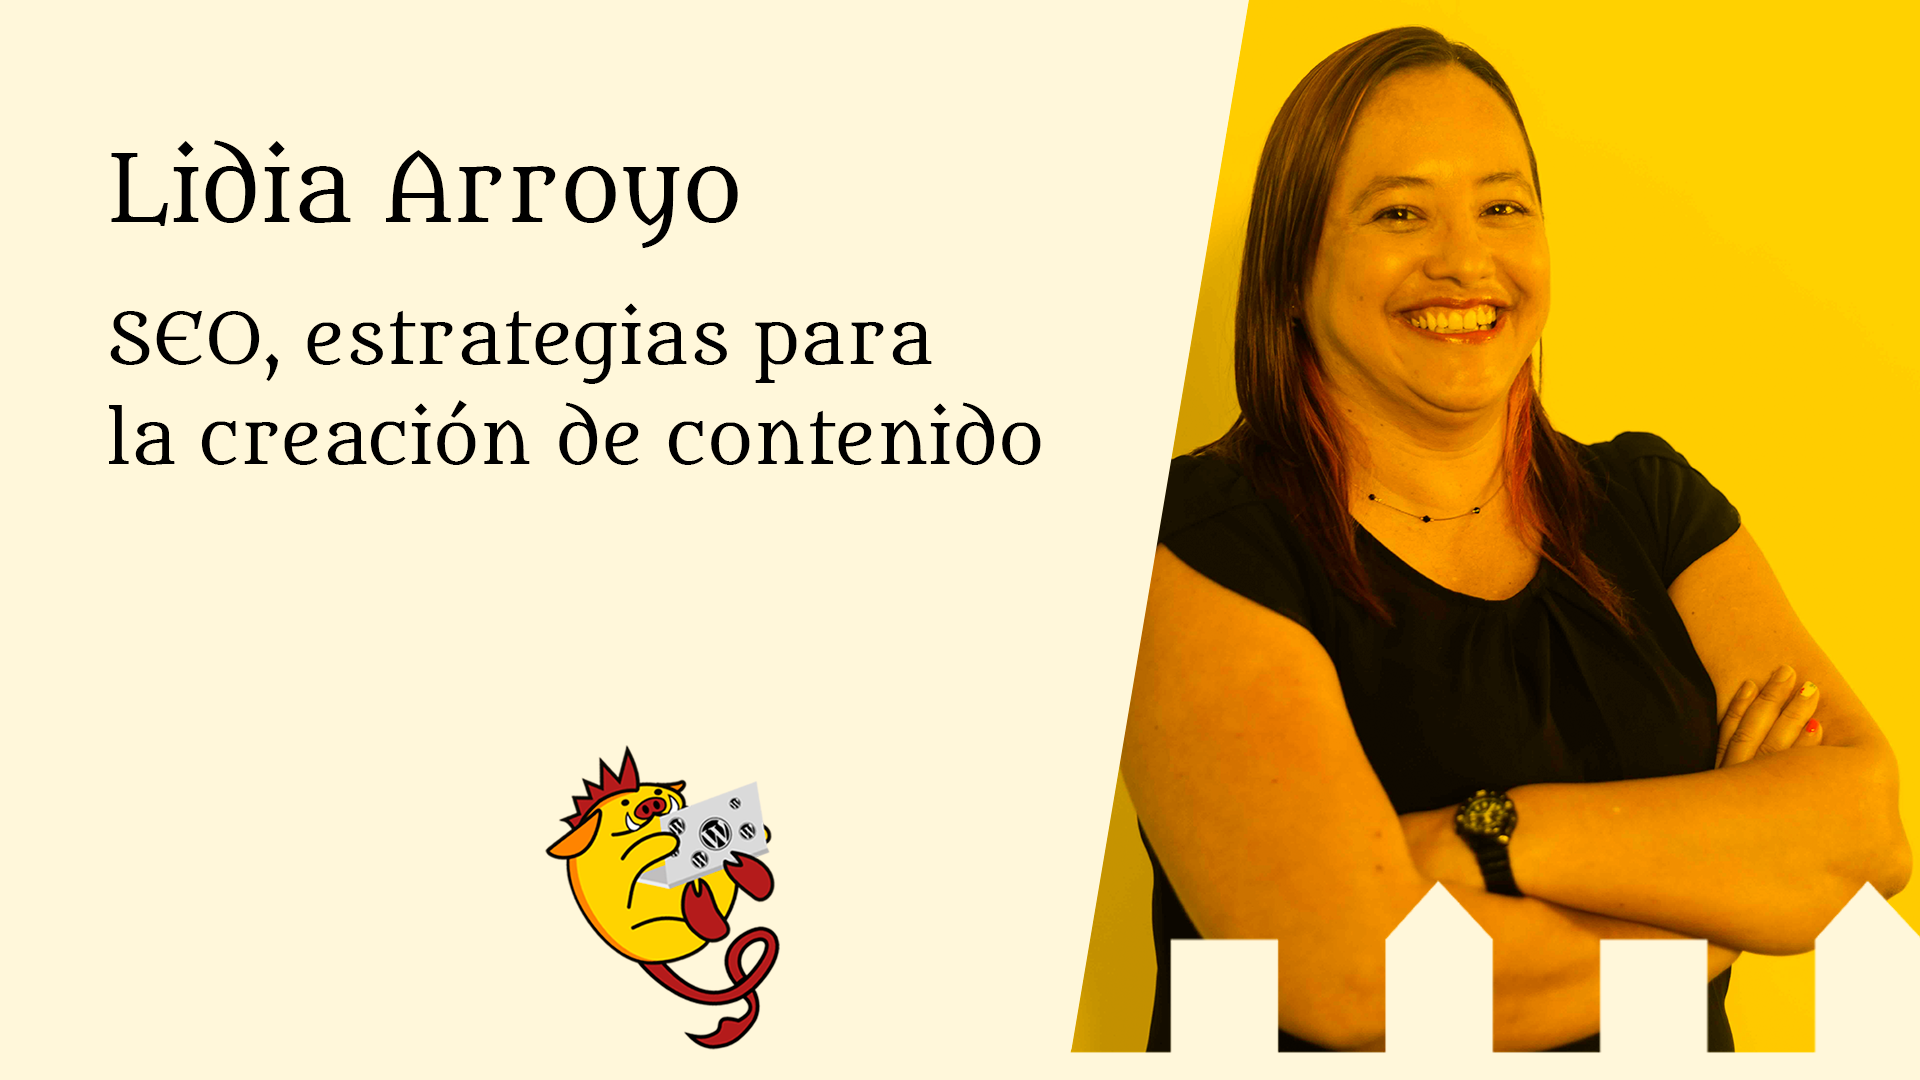 Lidia Arroyo Vargas: SEO, estrategias para la creación de contenido